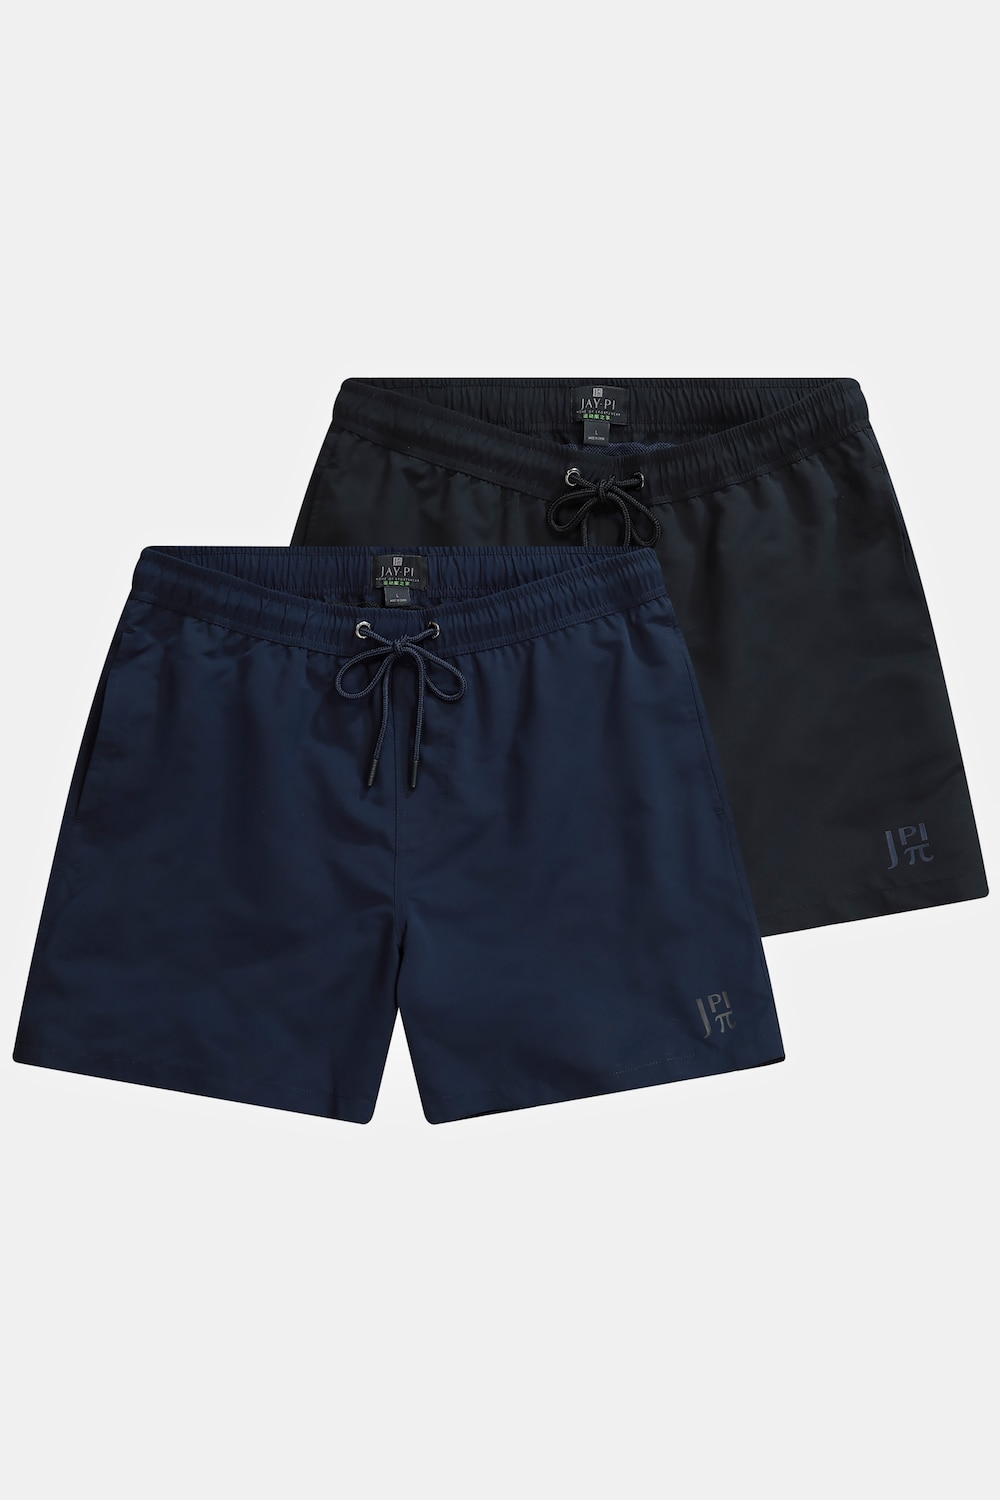 grandes tailles shorts de bain jay-pi avec taille élastique, femmes, noir, taille: 5xl, polyester, jay-pi